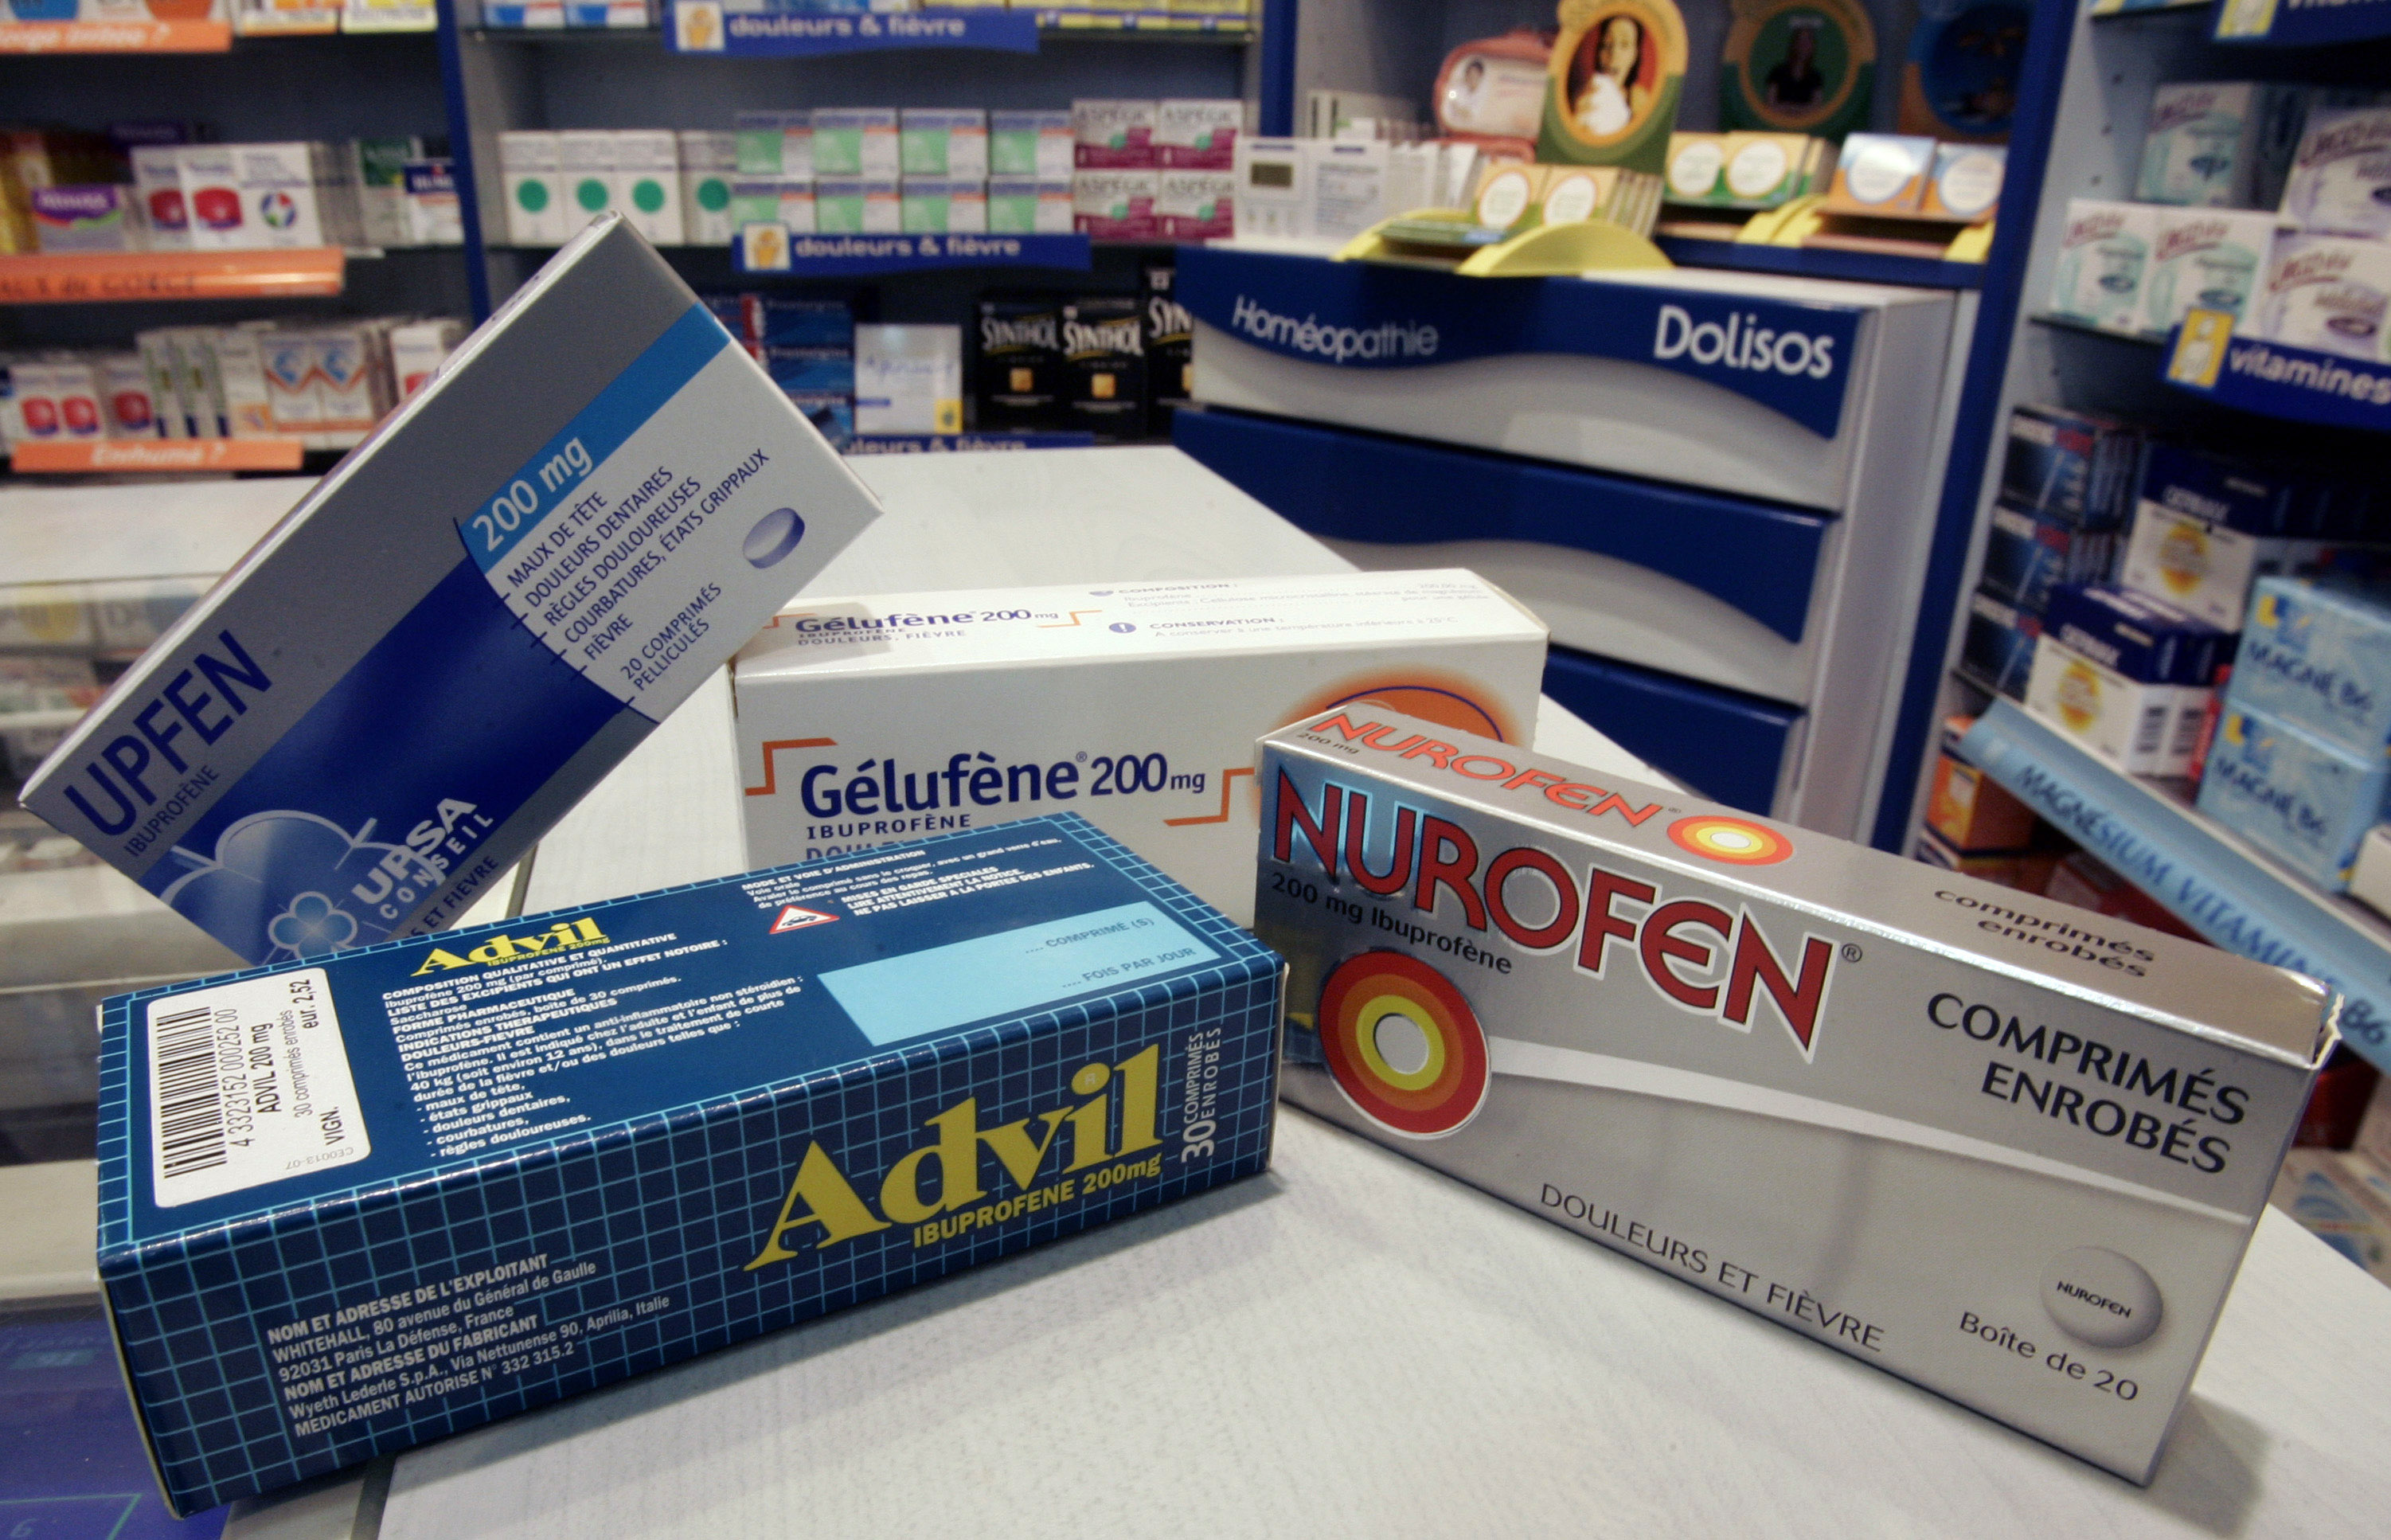 Ibuprofén-tartalmú szabad forgalmazású gyógyszerek Franciaországban